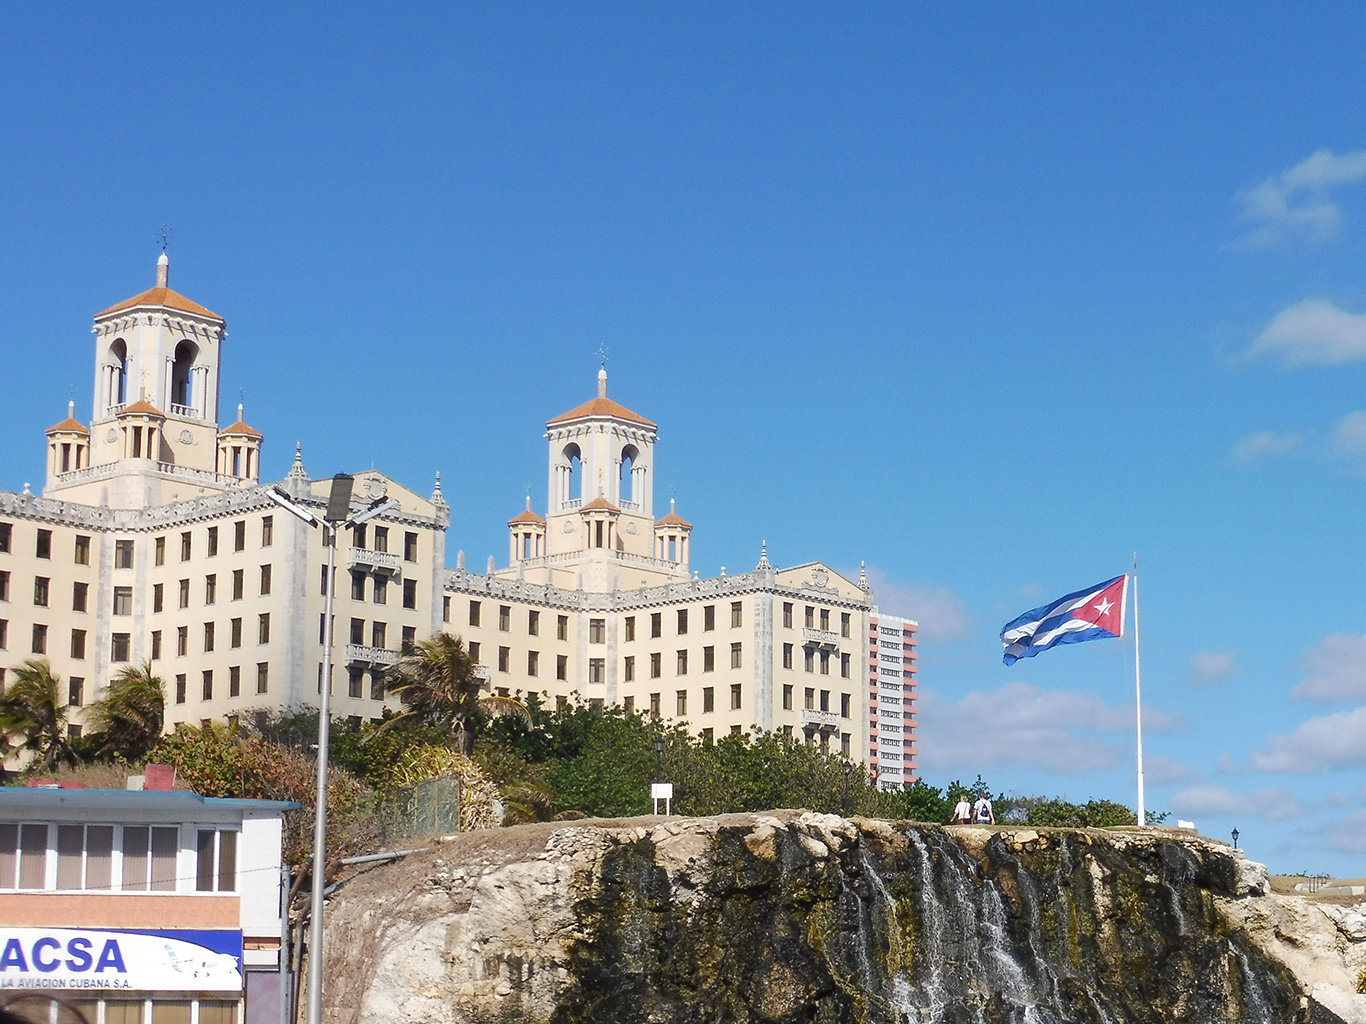 Hotel Nacional v Havaně bývá spojován s kubánskou mafií